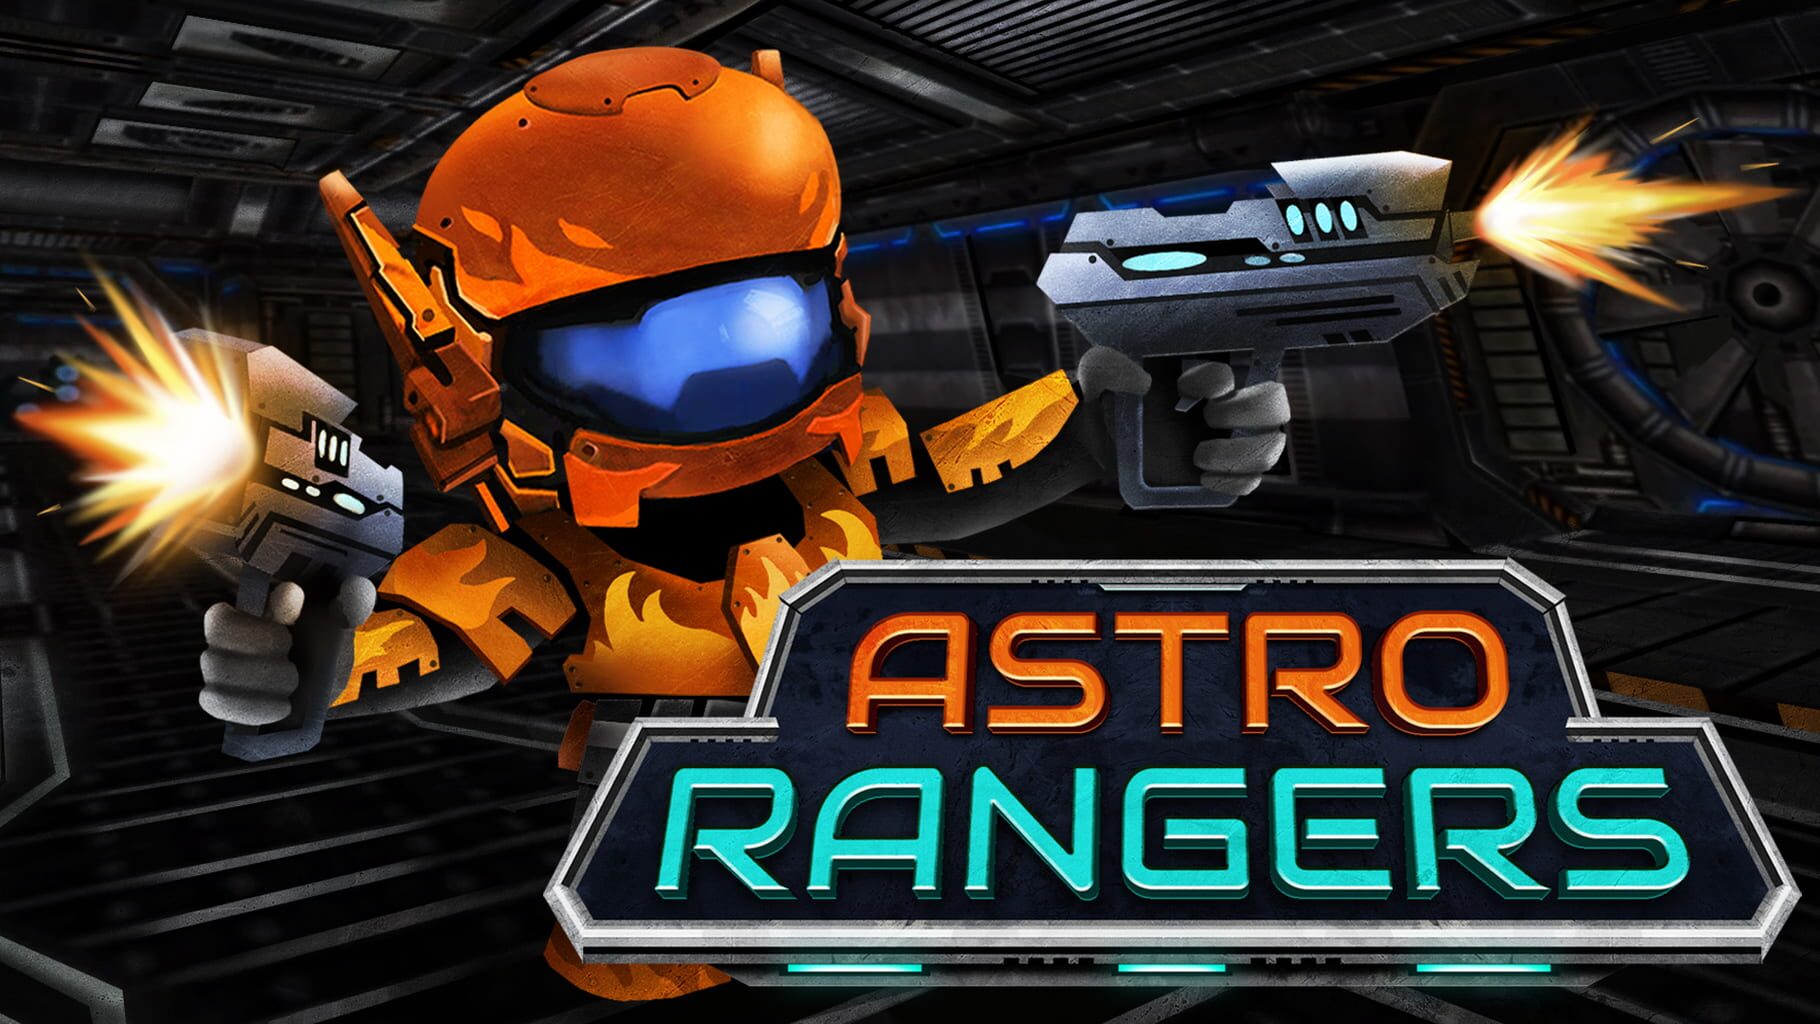 Astro Rangers artwork